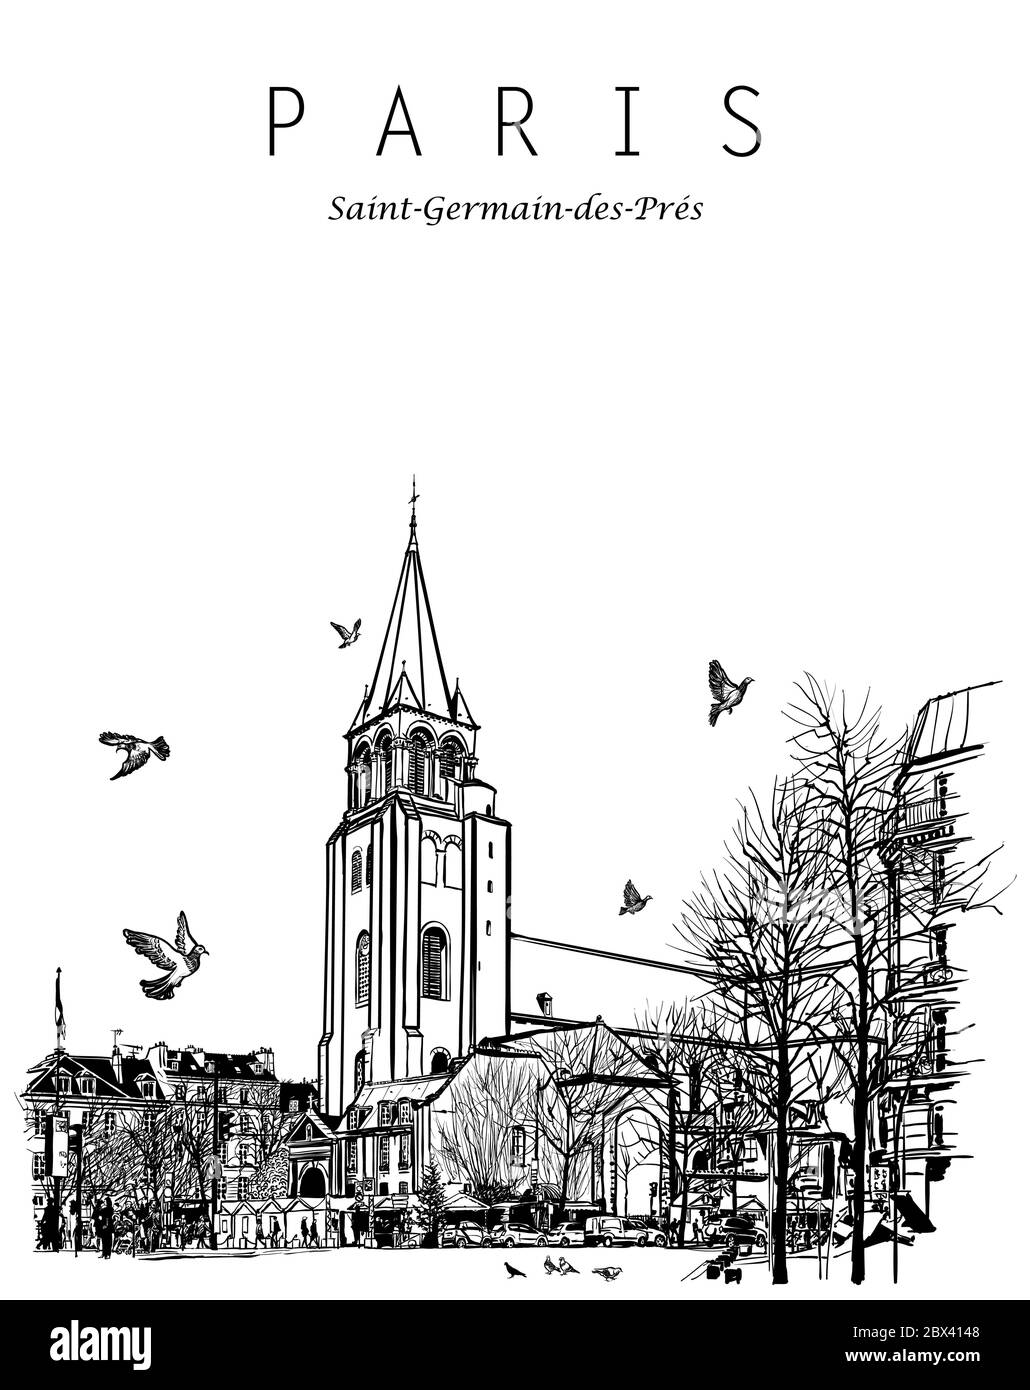 Paris, France - Alte Kirche von Saint Germain des Pres - Vektorgrafik (ideal für den Druck auf Stoff oder Papier, Poster oder Tapete, Haus Deko Stock Vektor